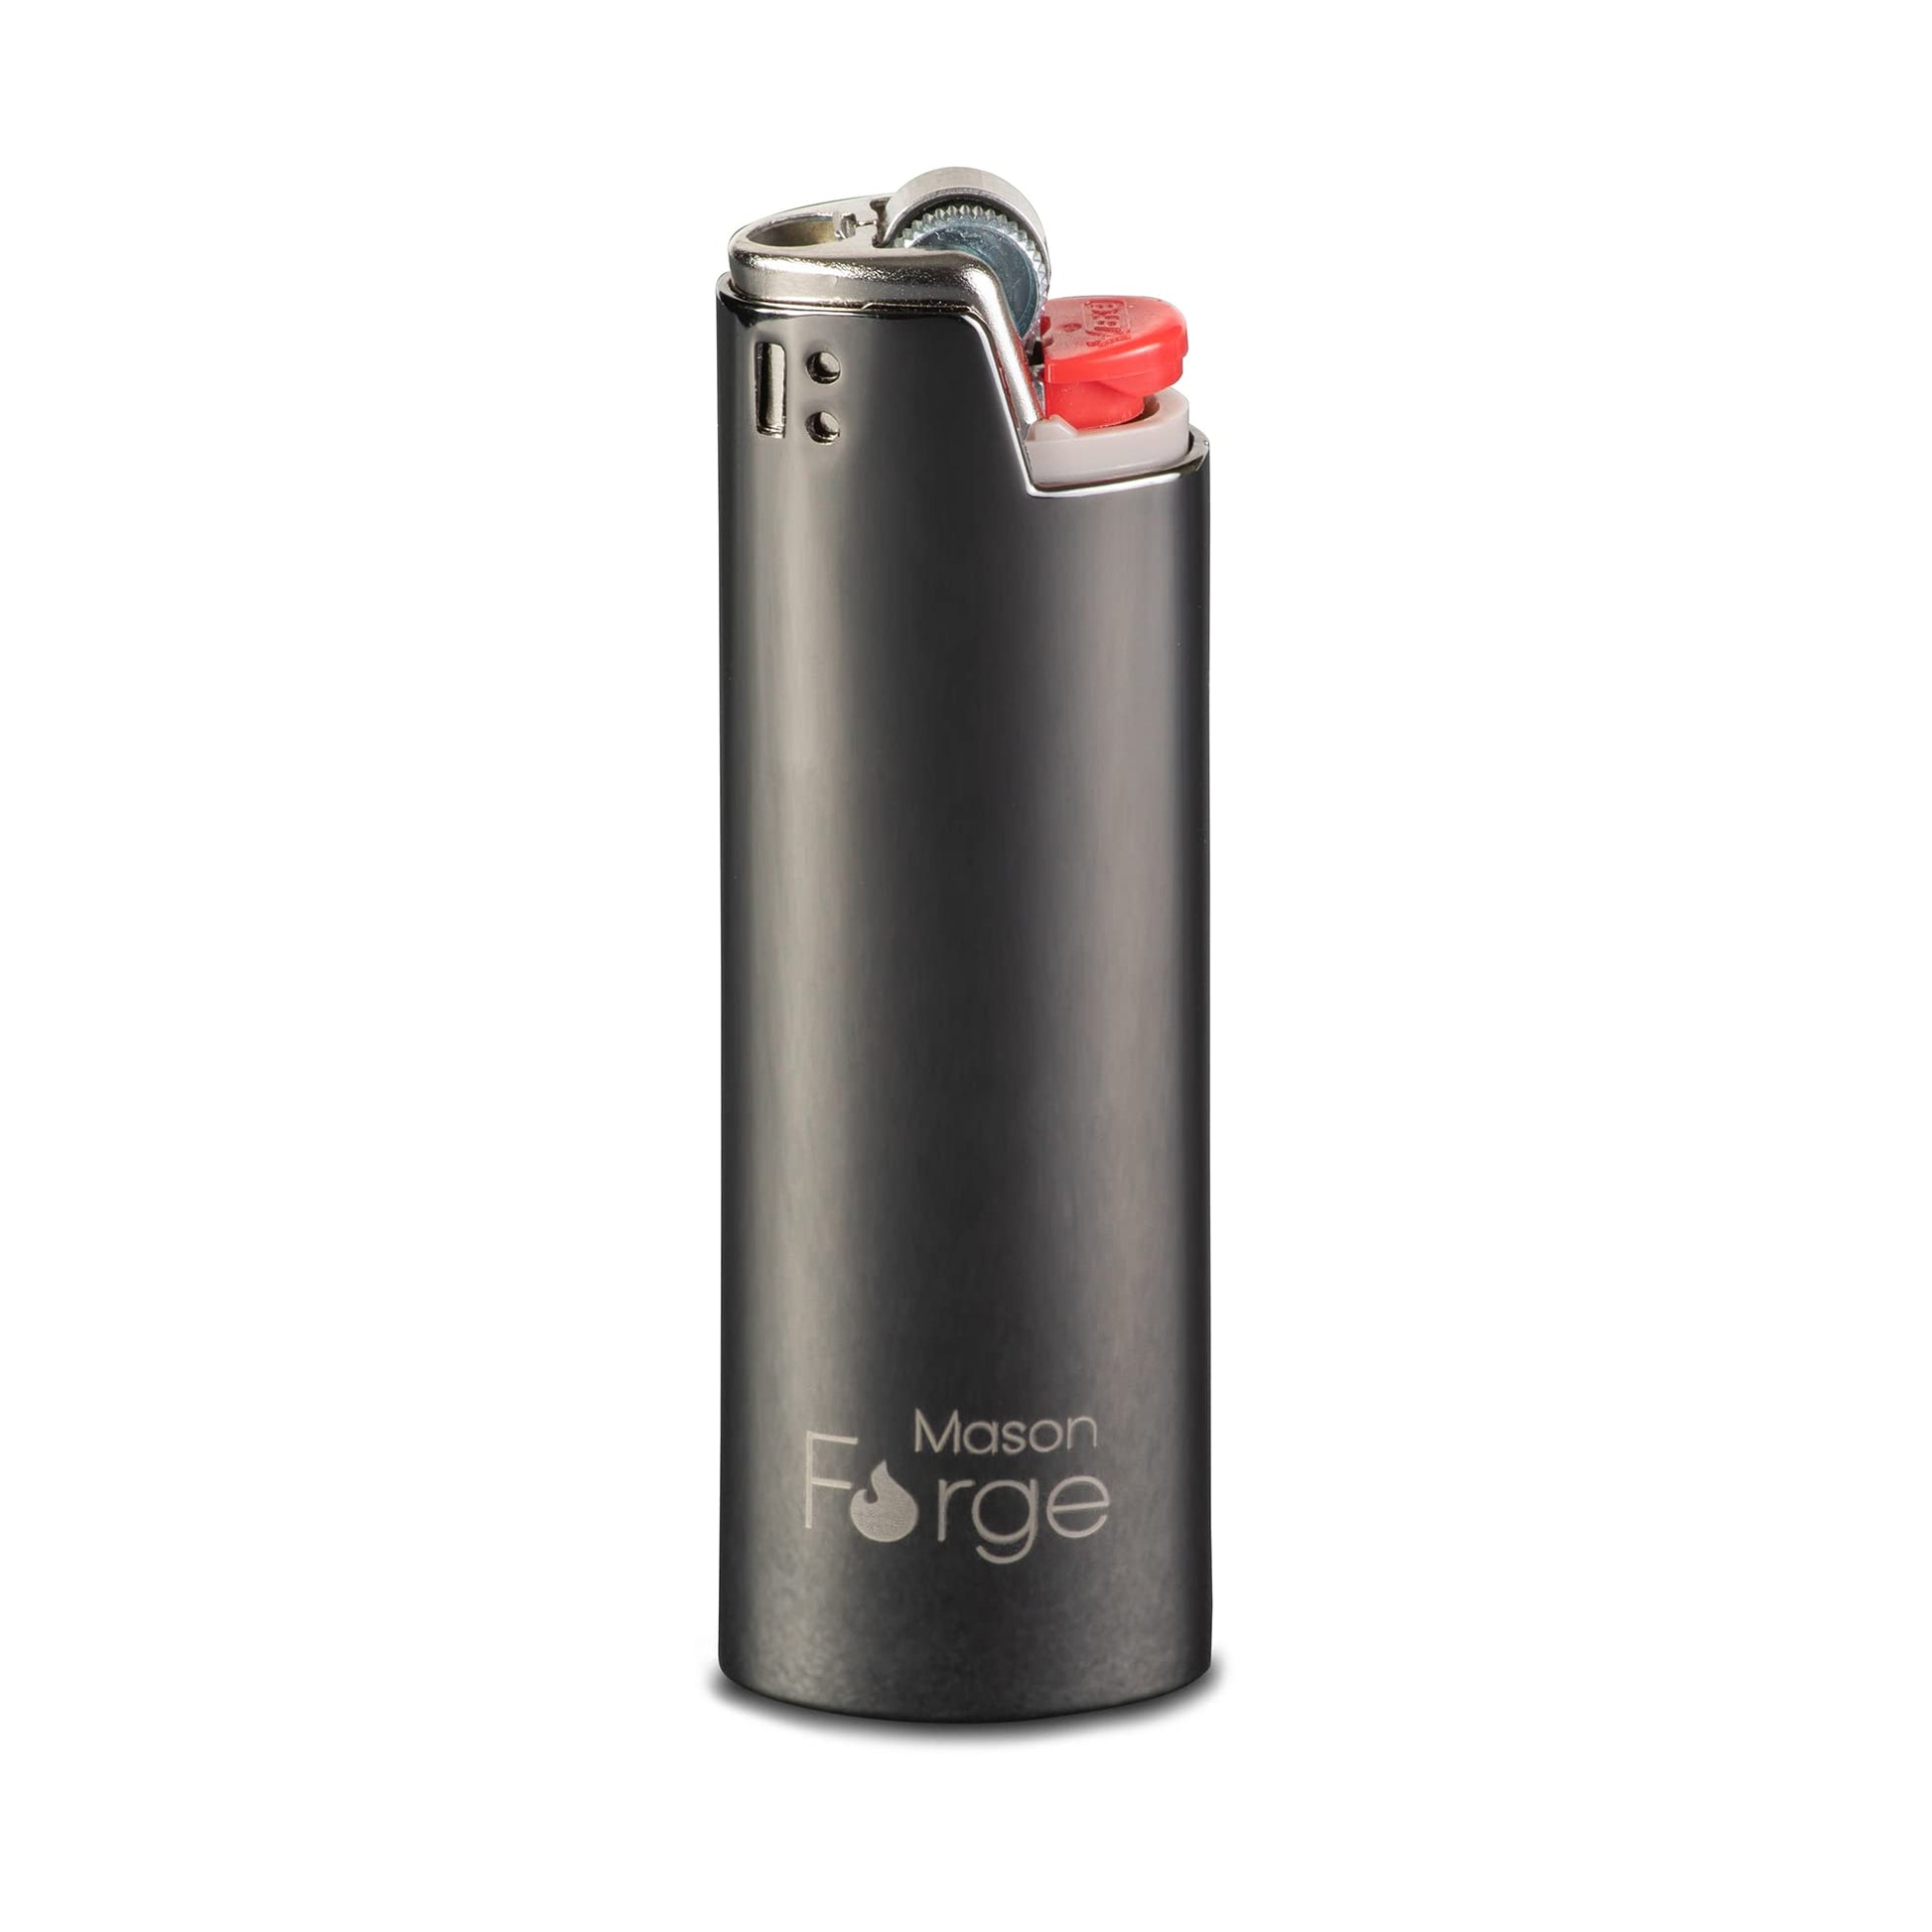 Mason Forge Metal Bic Lighter Case - Stylish Metal Lighter Holder